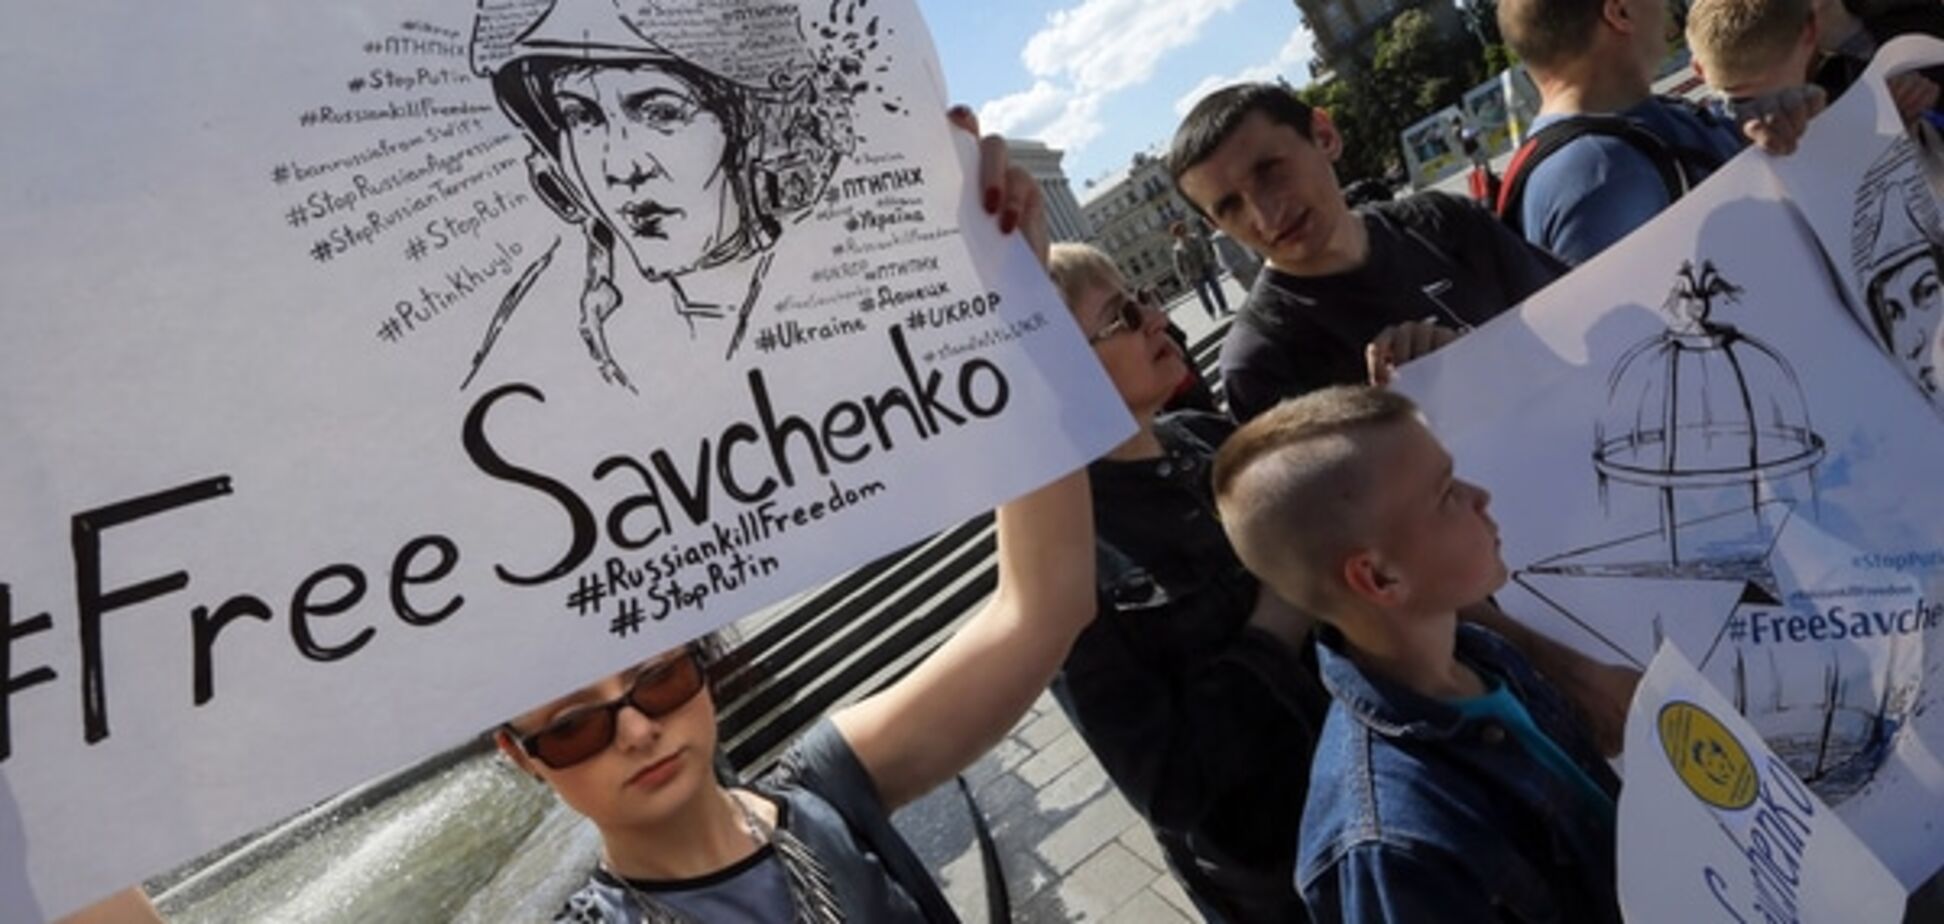 Савченко уверена в своем освобождении через переговоры - адвокат